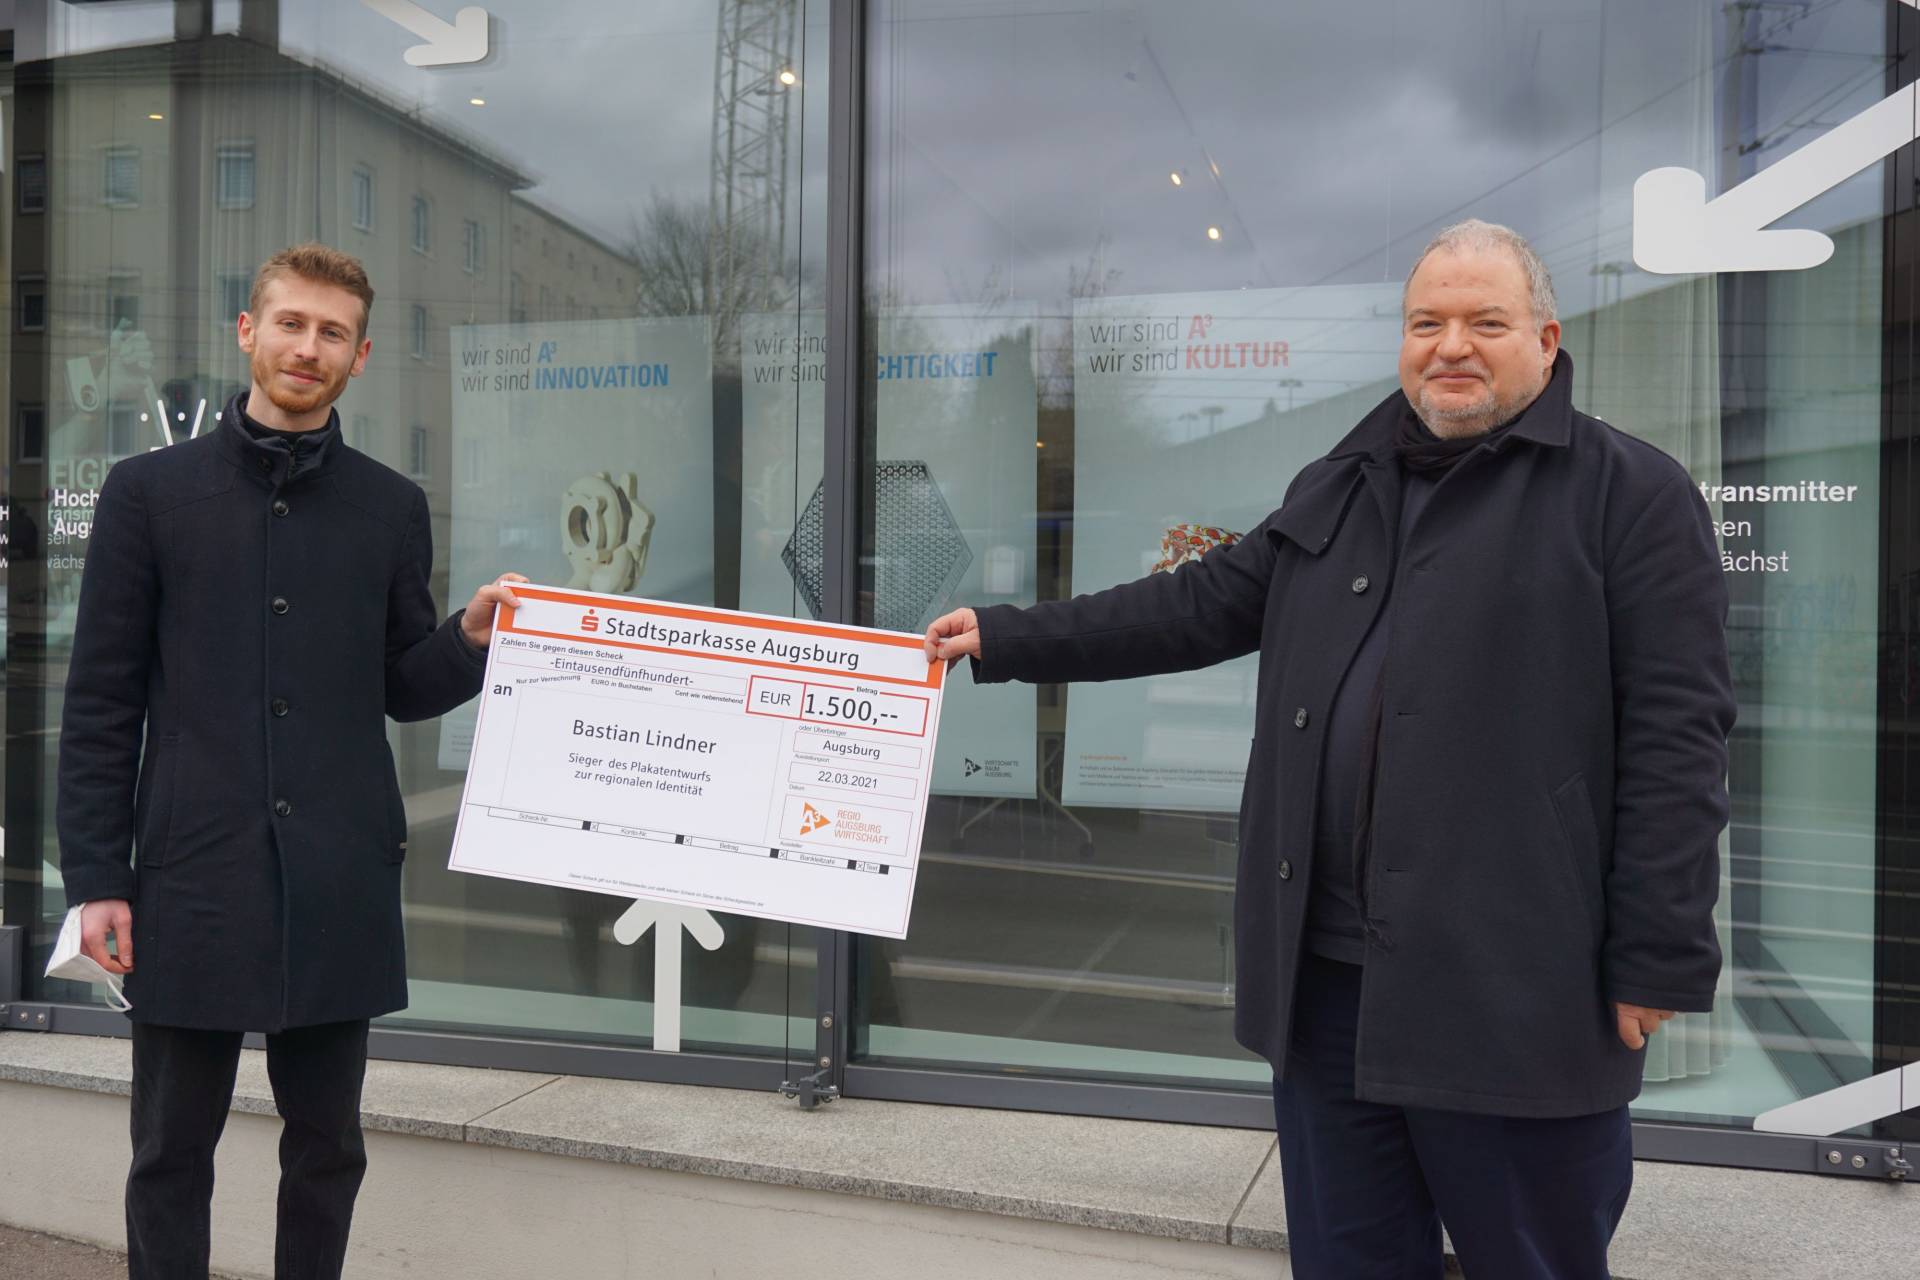 Gewinner Bastian Lindner (links) erhält das Preisgeld von Regio-Geschäftsführer Andreas Thiel © Regio Augsburg Wirtschaft GmbH